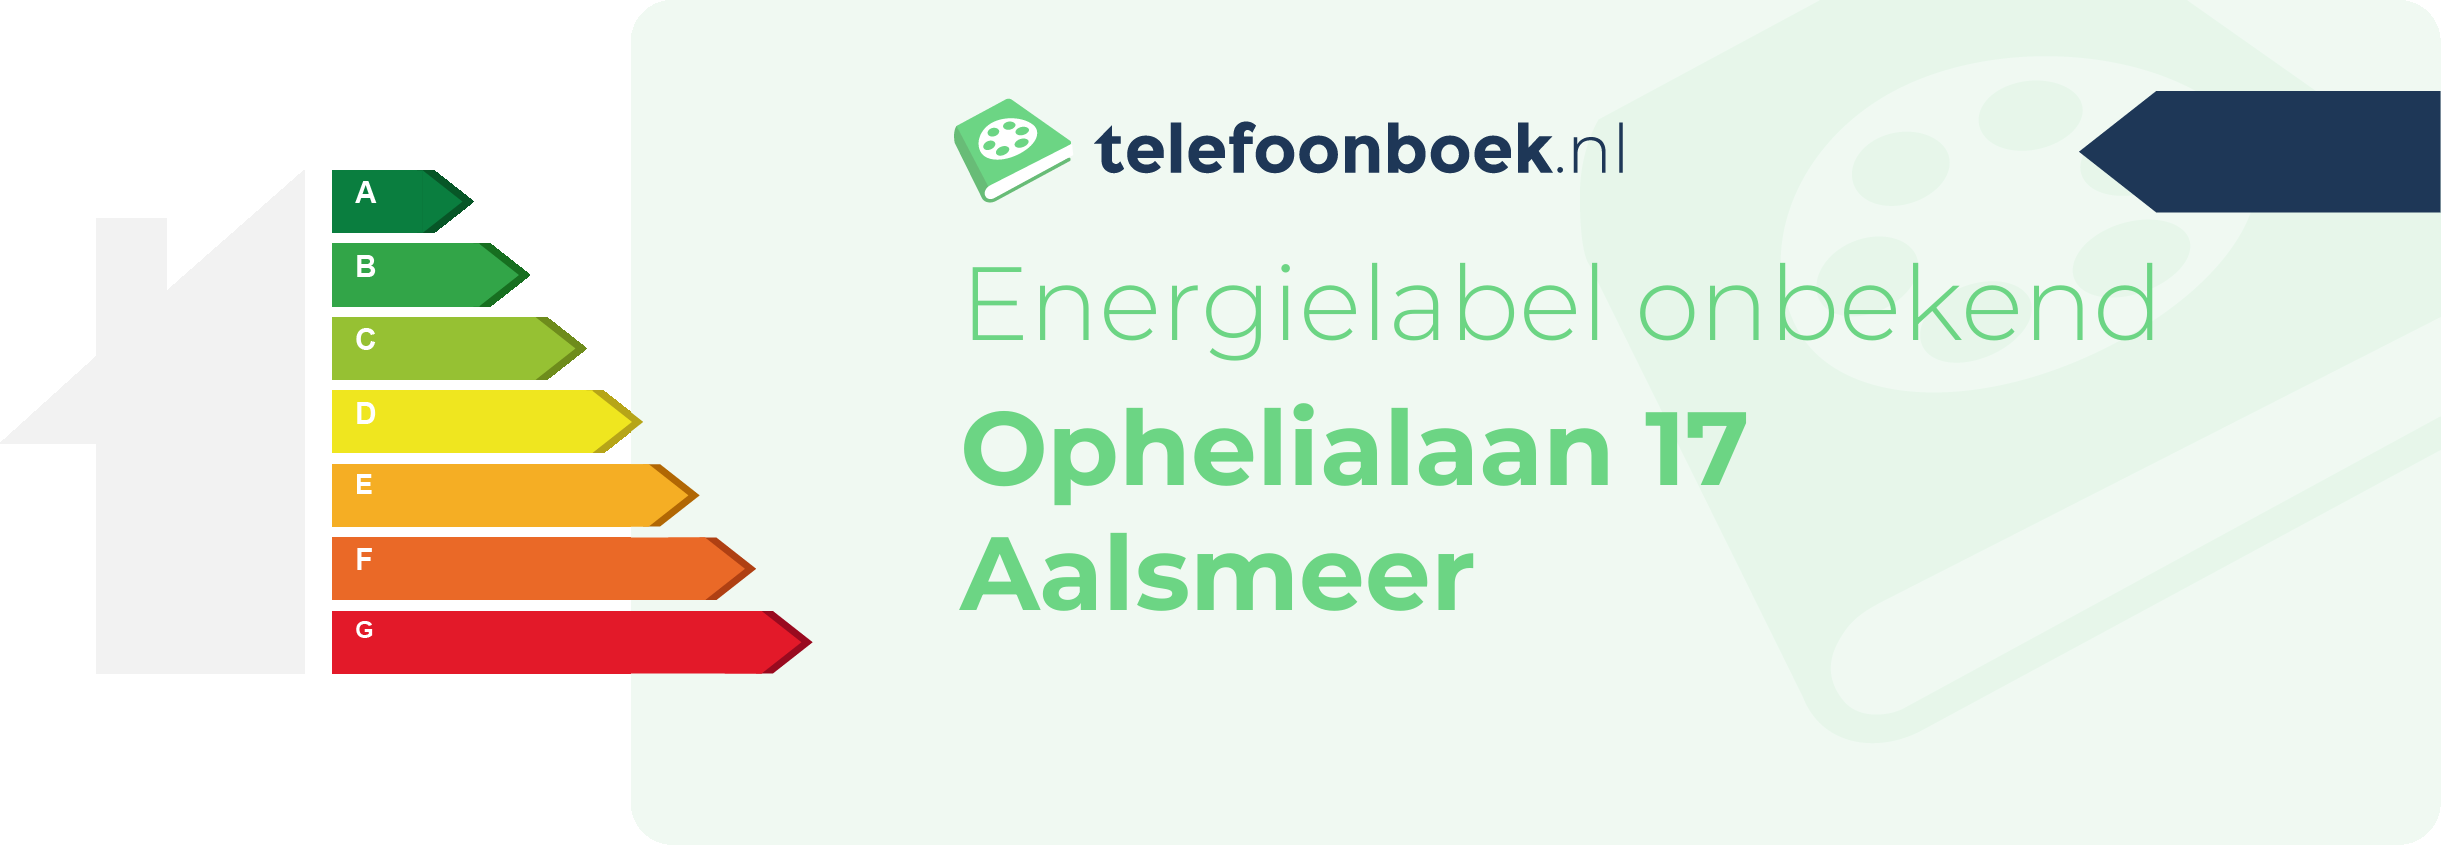 Energielabel Ophelialaan 17 Aalsmeer